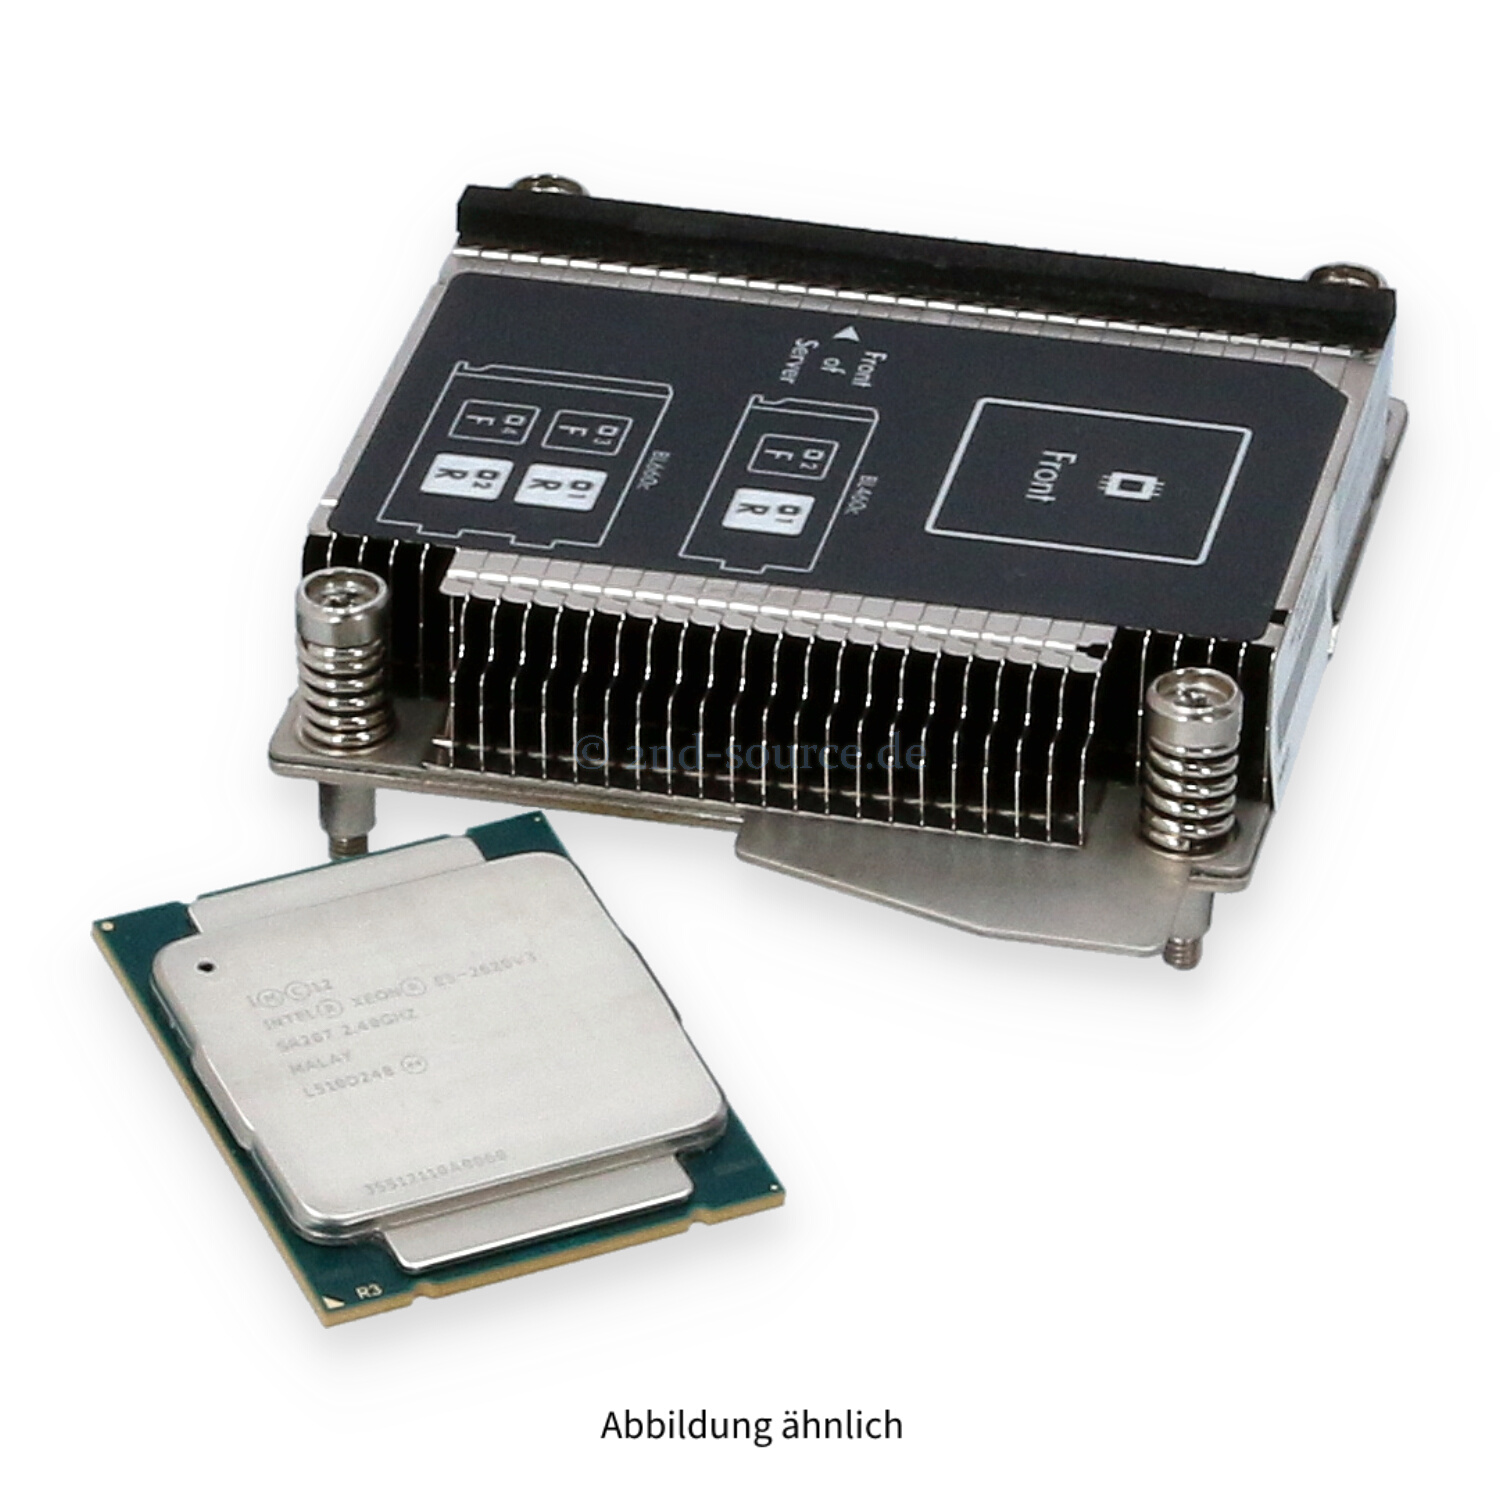 HPE BL460c G9 Intel Xeon E5-2620v3 (2.40GHz 6-Core 15MB 85W) CPU Kit 726995-B21 SR207